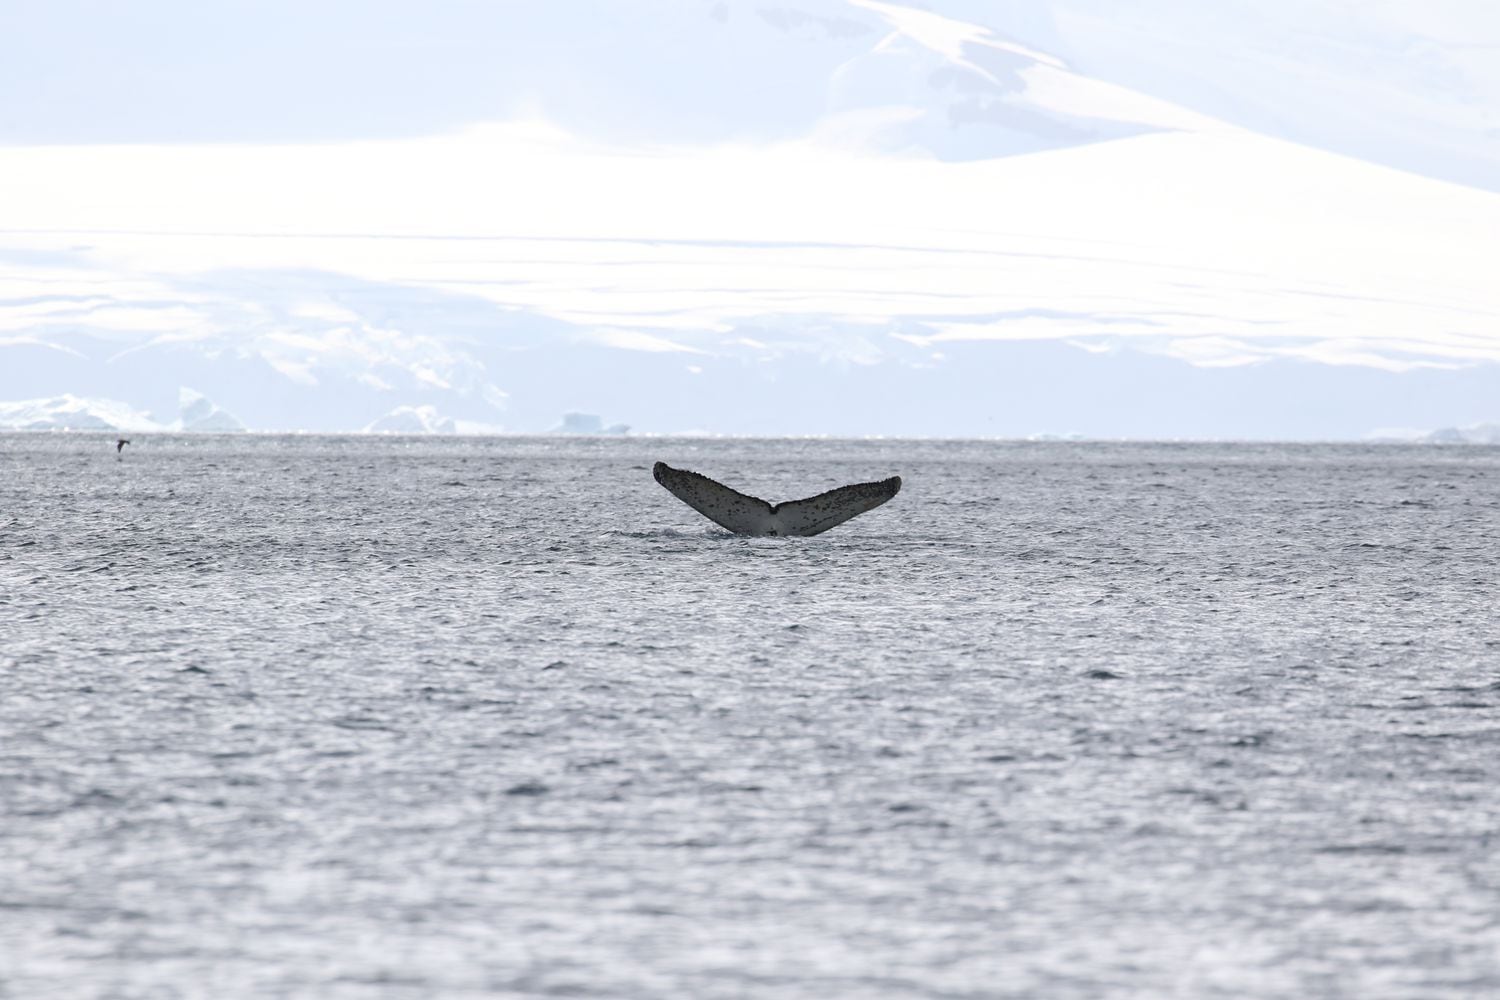 Cauda da baleia jubarte encontrada no mar antártico. 